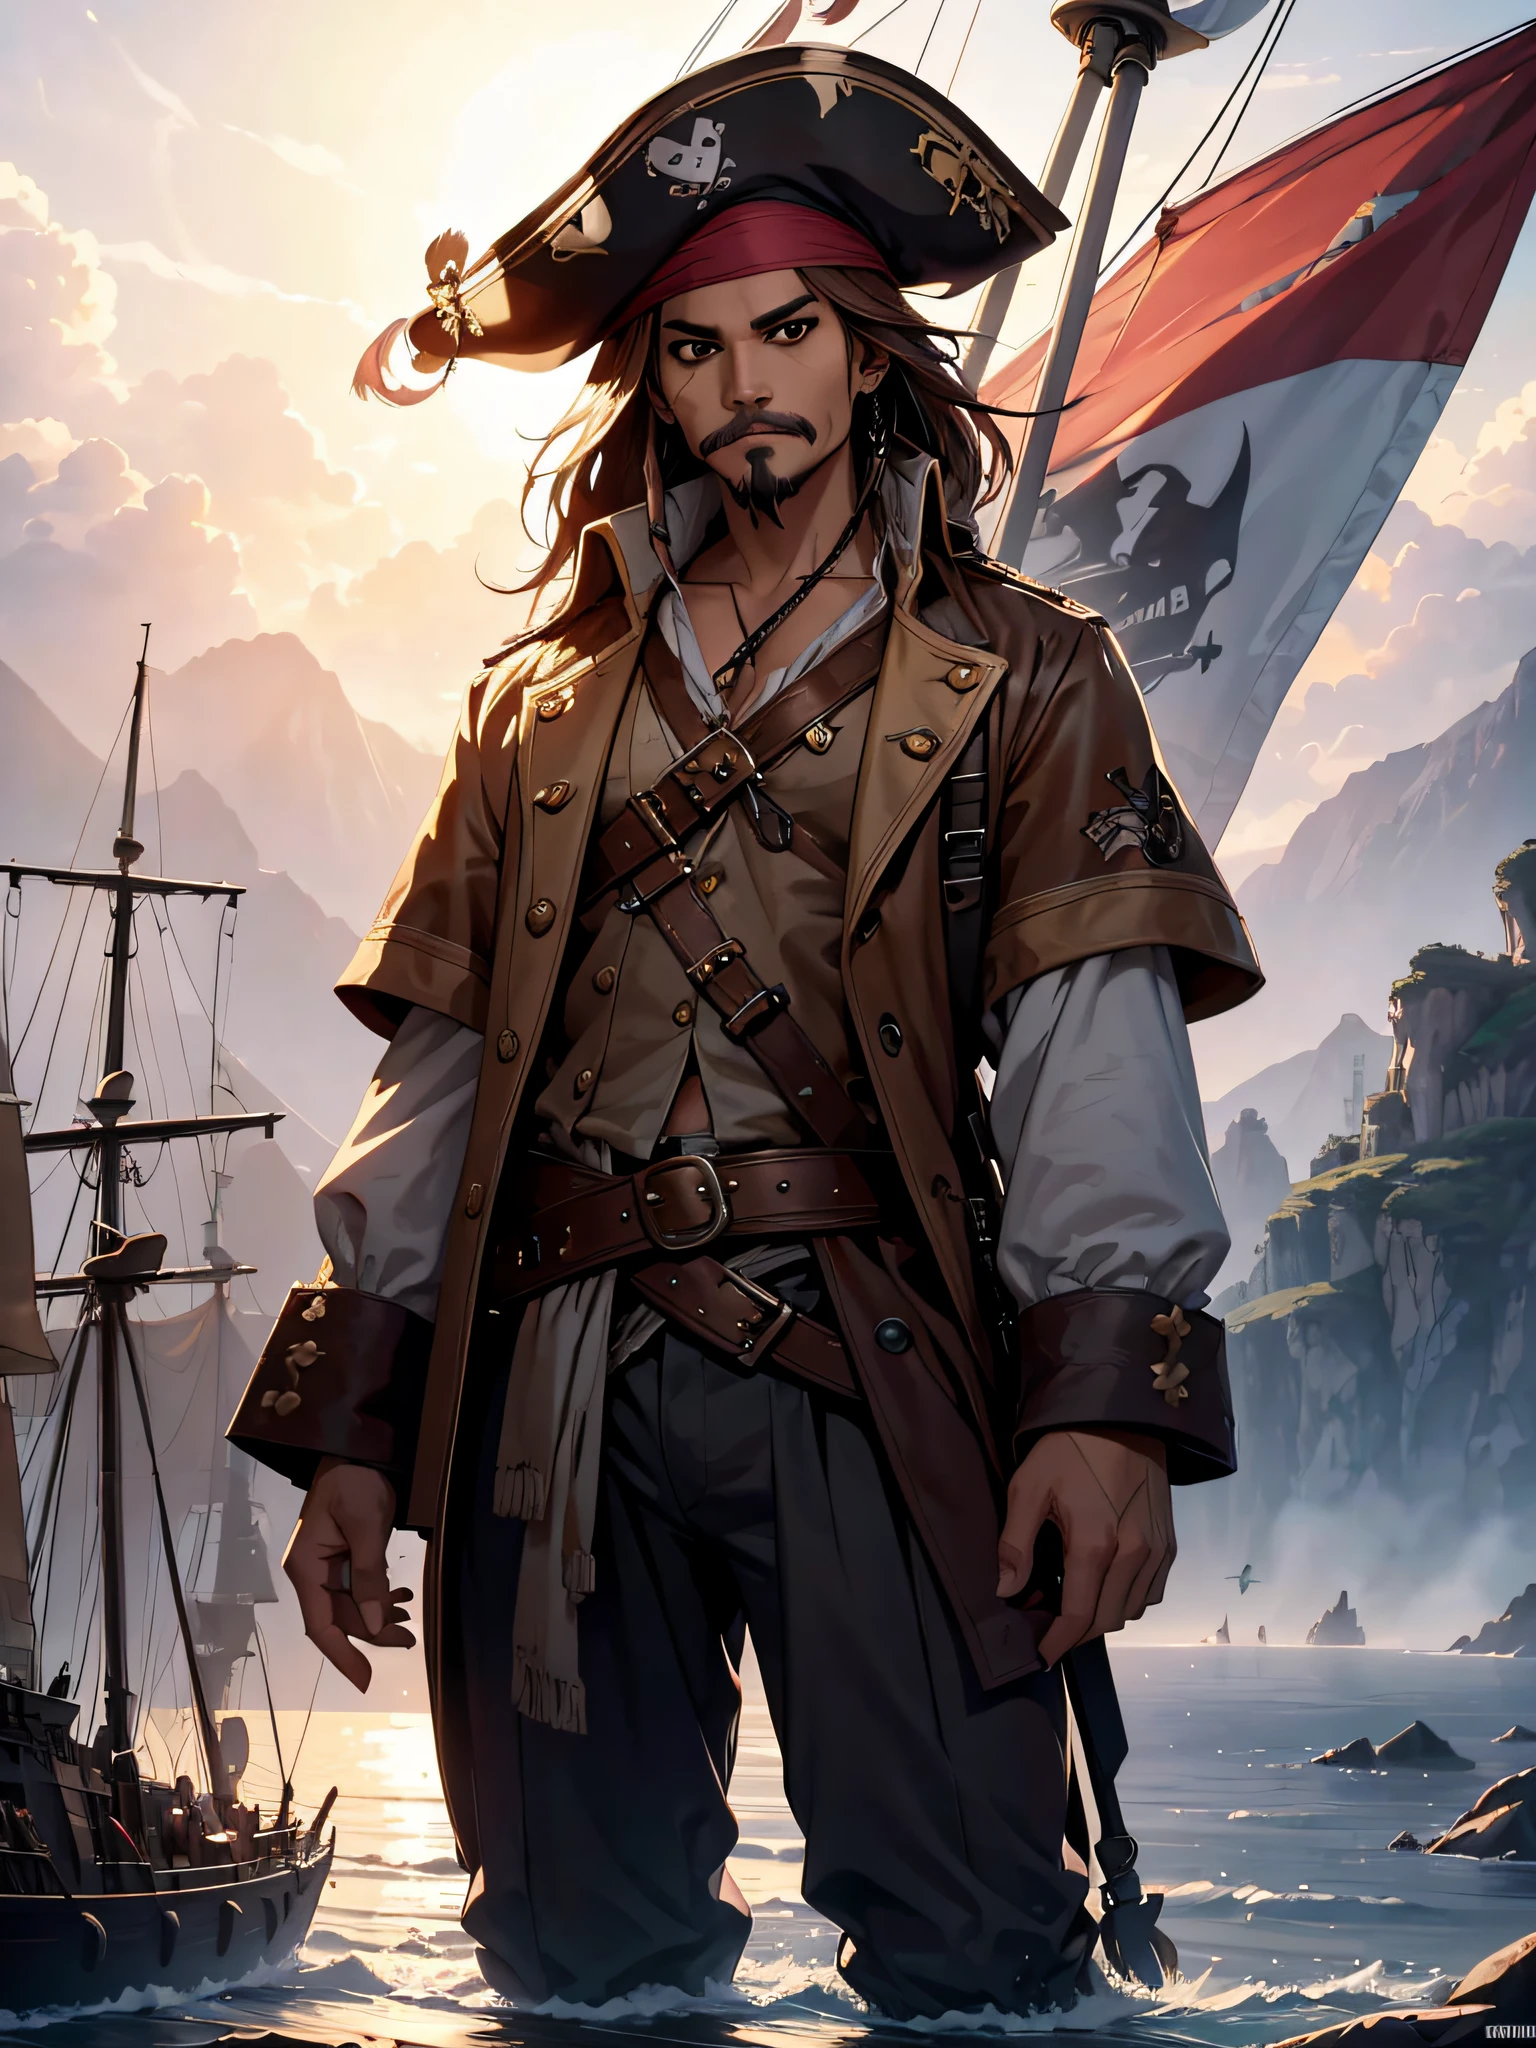 Джек Воробей, стою на конце своего пиратского корабля, держит усы, ухмыляясь, пиратский флаг на мачте, все тело, {чрезвычайно подробные обои с компьютерной графикой 8k}, обширная пейзажная фотография, (центрированный вид, фокусирующийся на персонаже и обстановке), (вид на широкое открытое поле), (Снимок под высоким углом), (выделять: 1.6), (Приглушенный свет: 1.6), (источник теплого света: 1.8), сложные детали, (переливающиеся цвета: 1.5), (яркое освещение), (атмосферное освещение), мечтательный, эпический